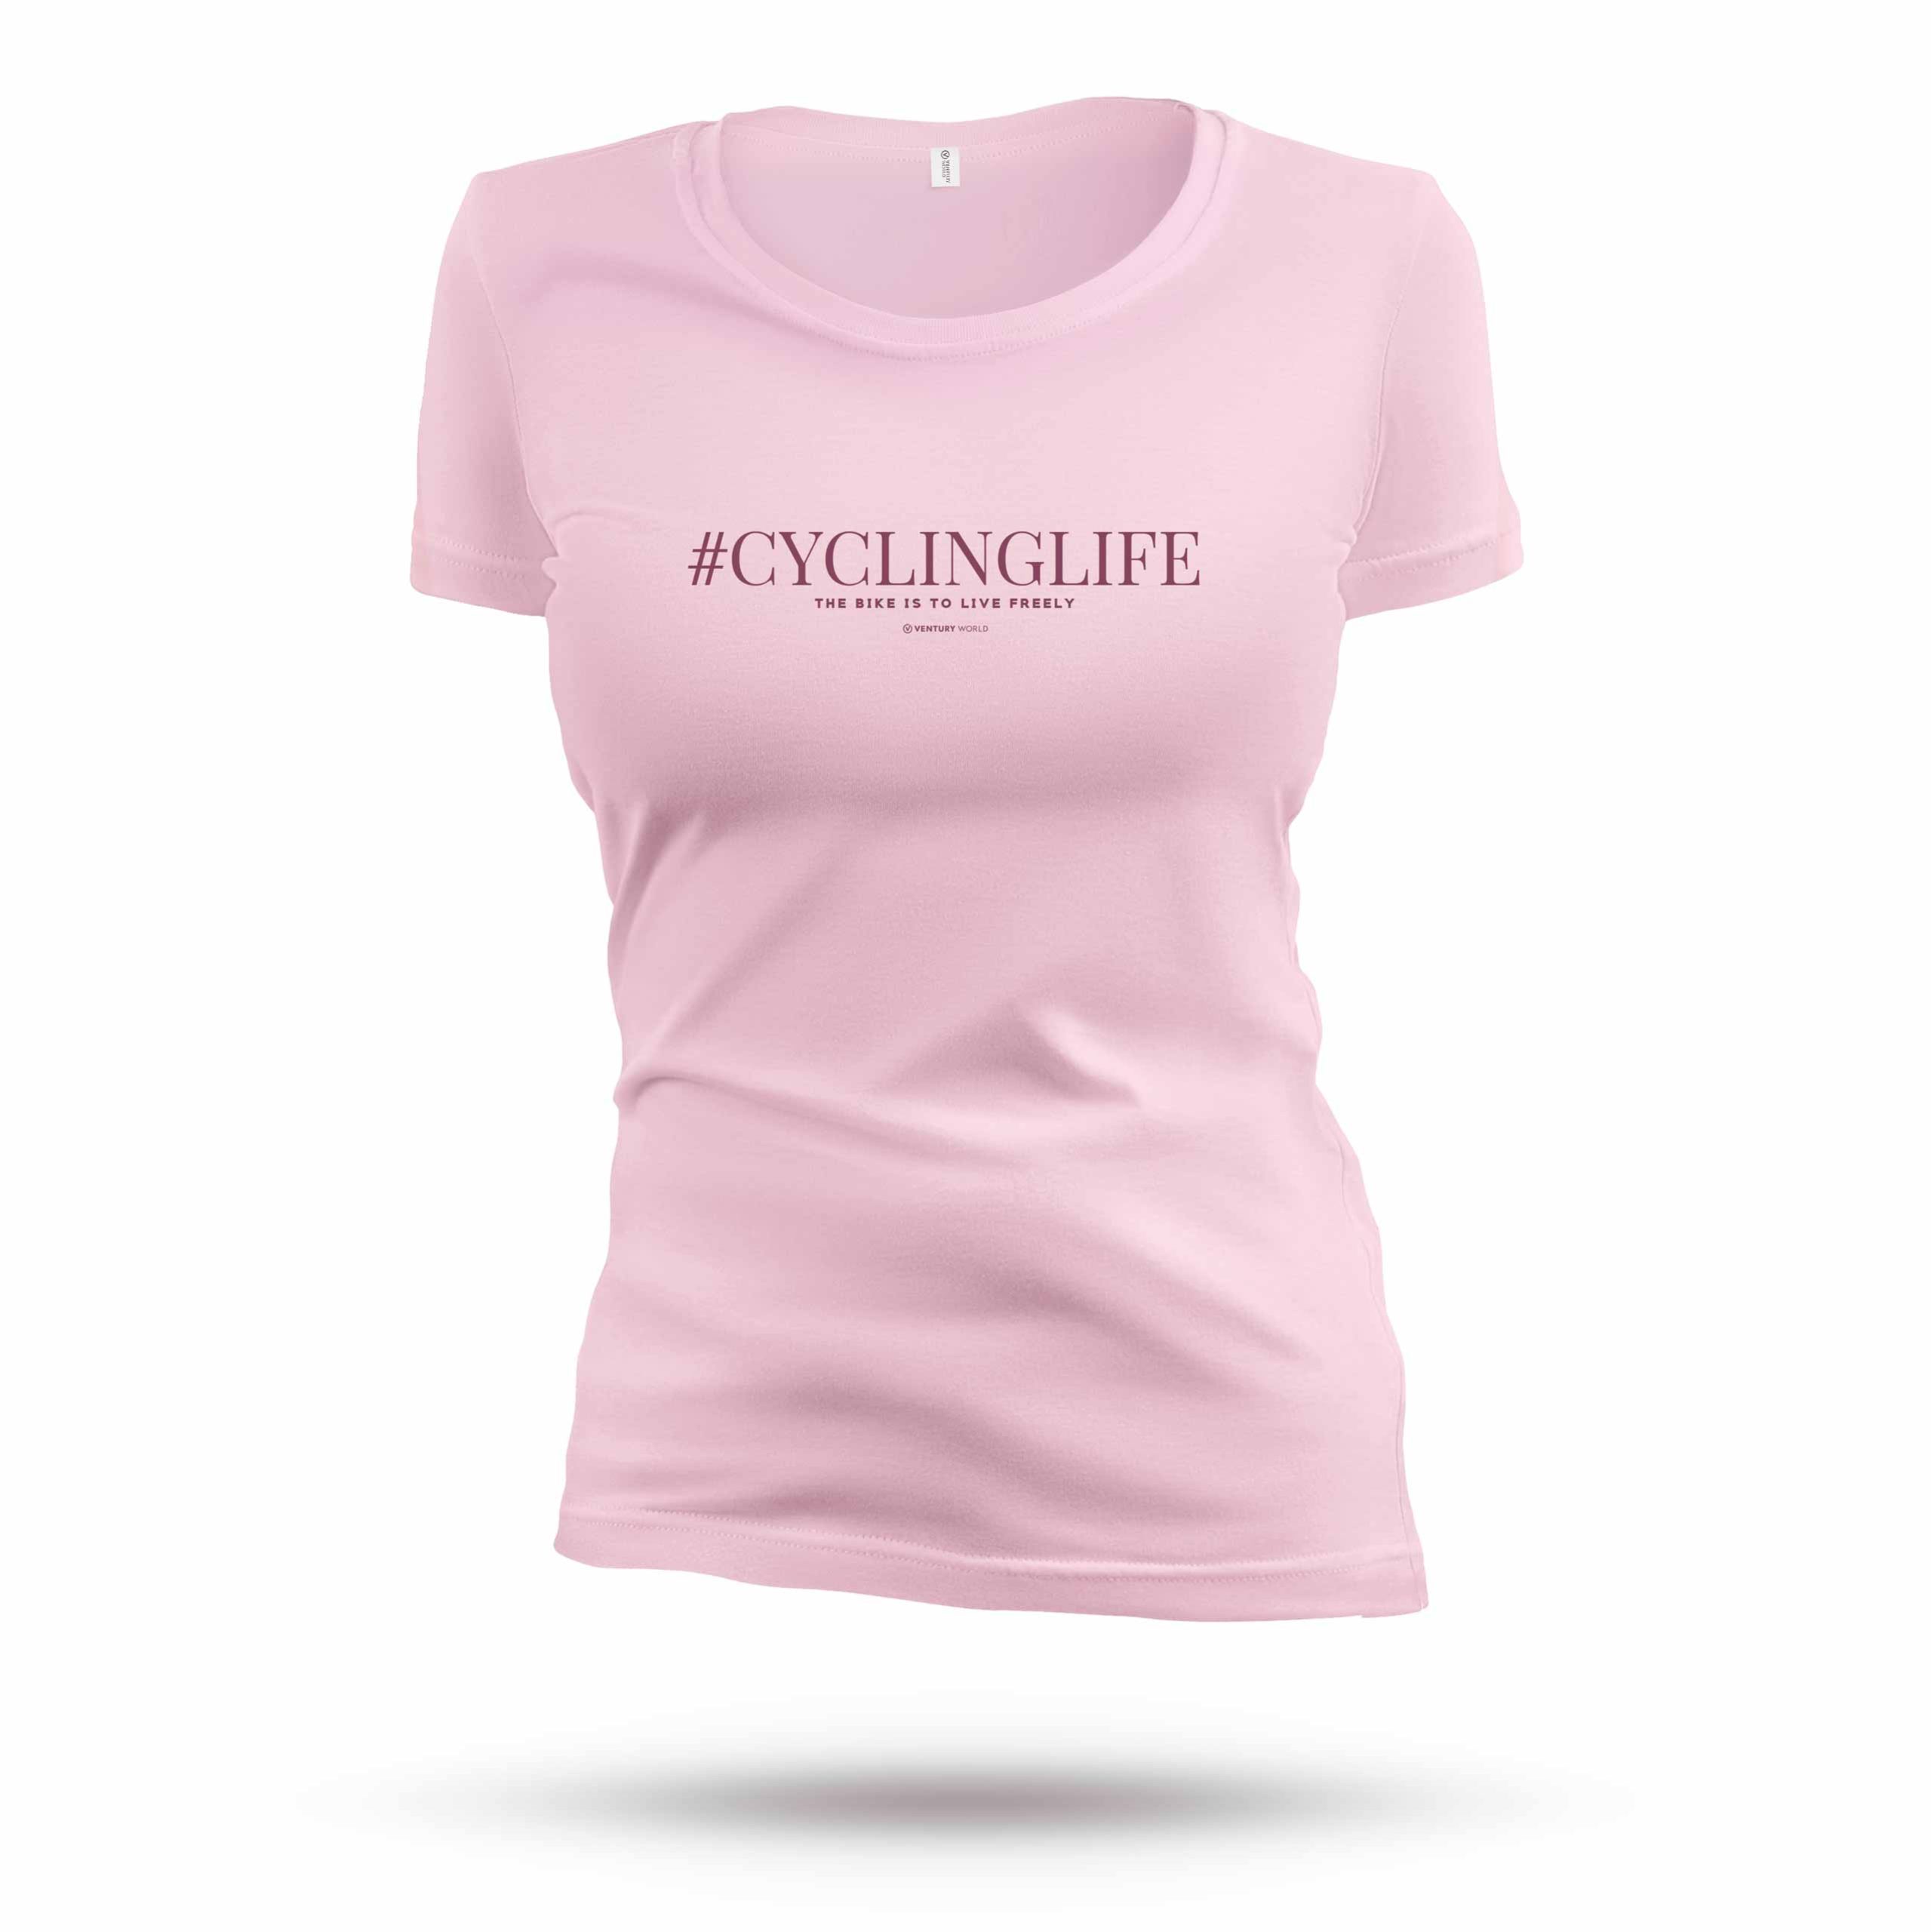 T-shirt cycling femme - Collection Live Freely femme de Ventury World - T-shirt femme 100% naturel de grande qualité coupe ajustée grand col rond.